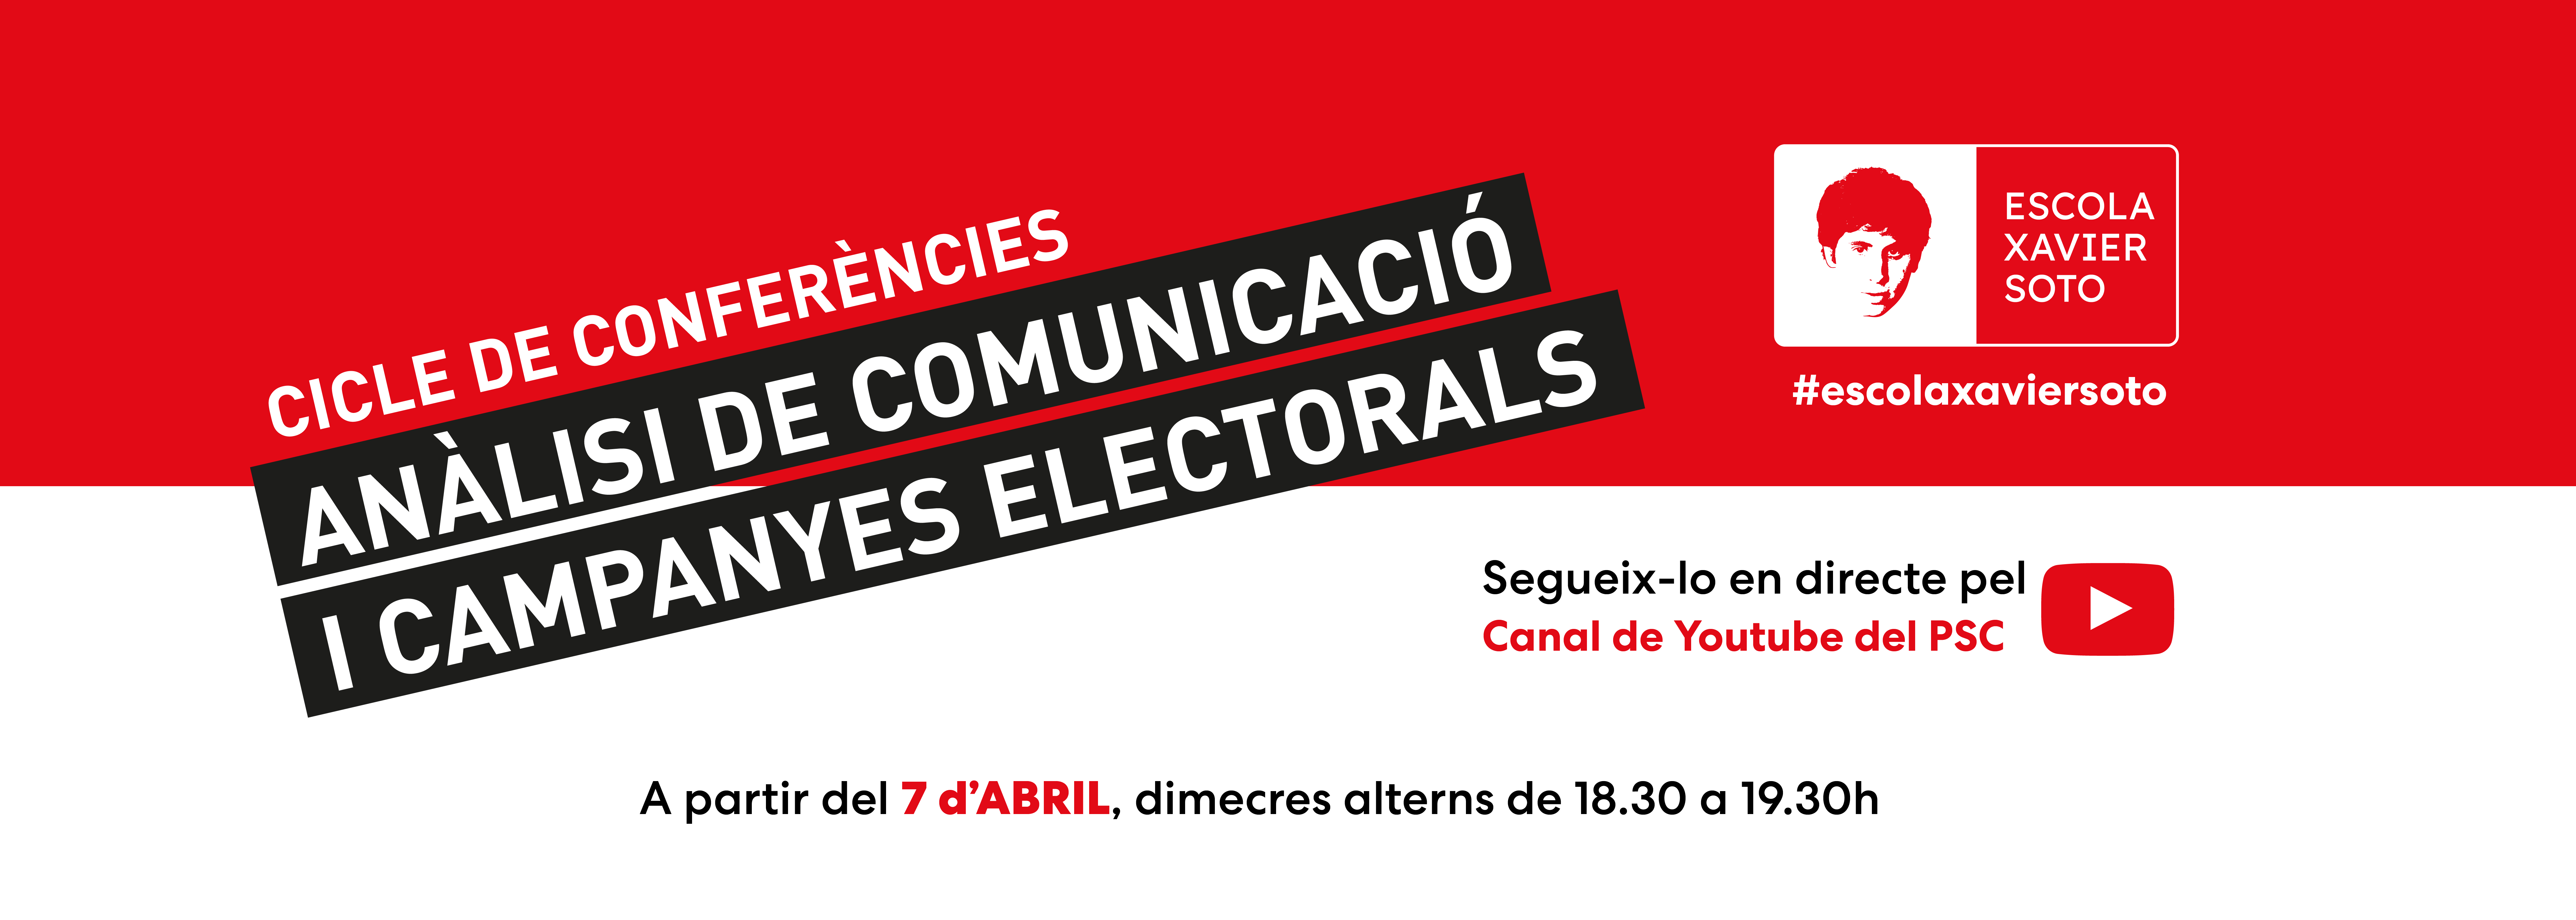 ANÁLISI DE COMUNICACIÓ I CAMPANYES ELECTORALS